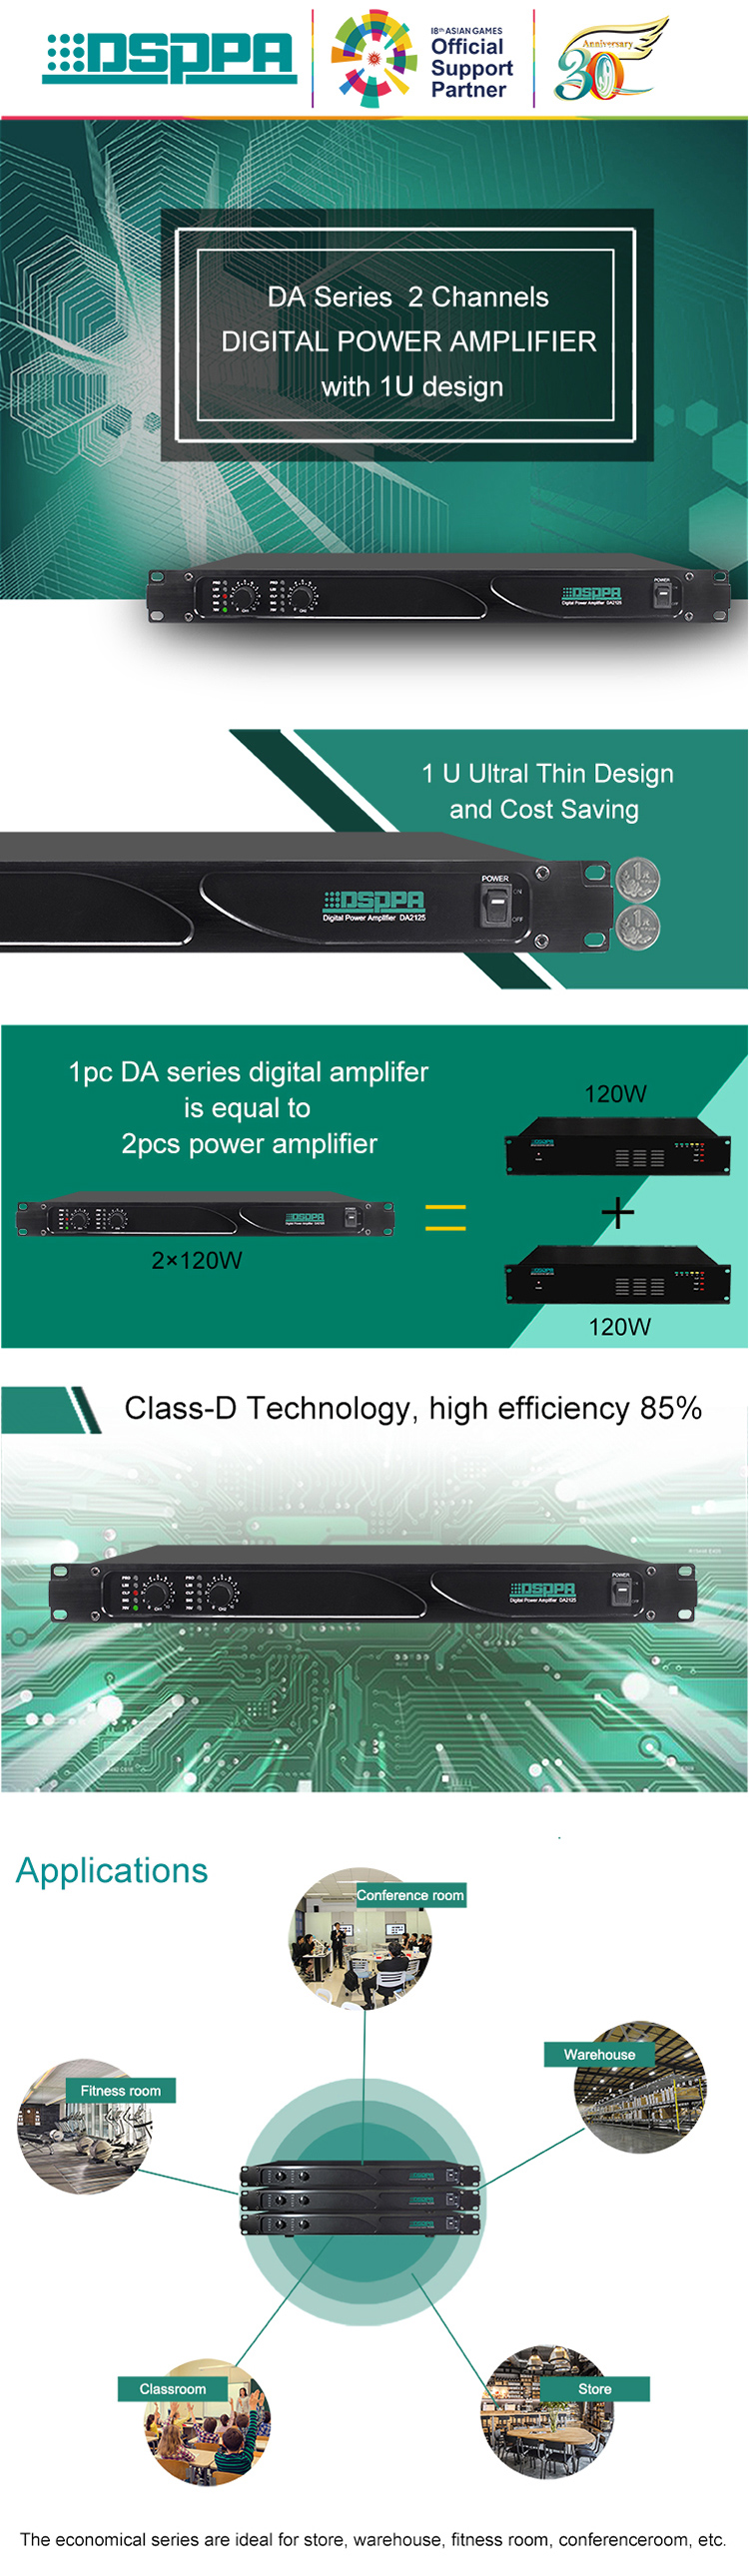 DA2500 2*500W Dual Channels Digital Amplifier